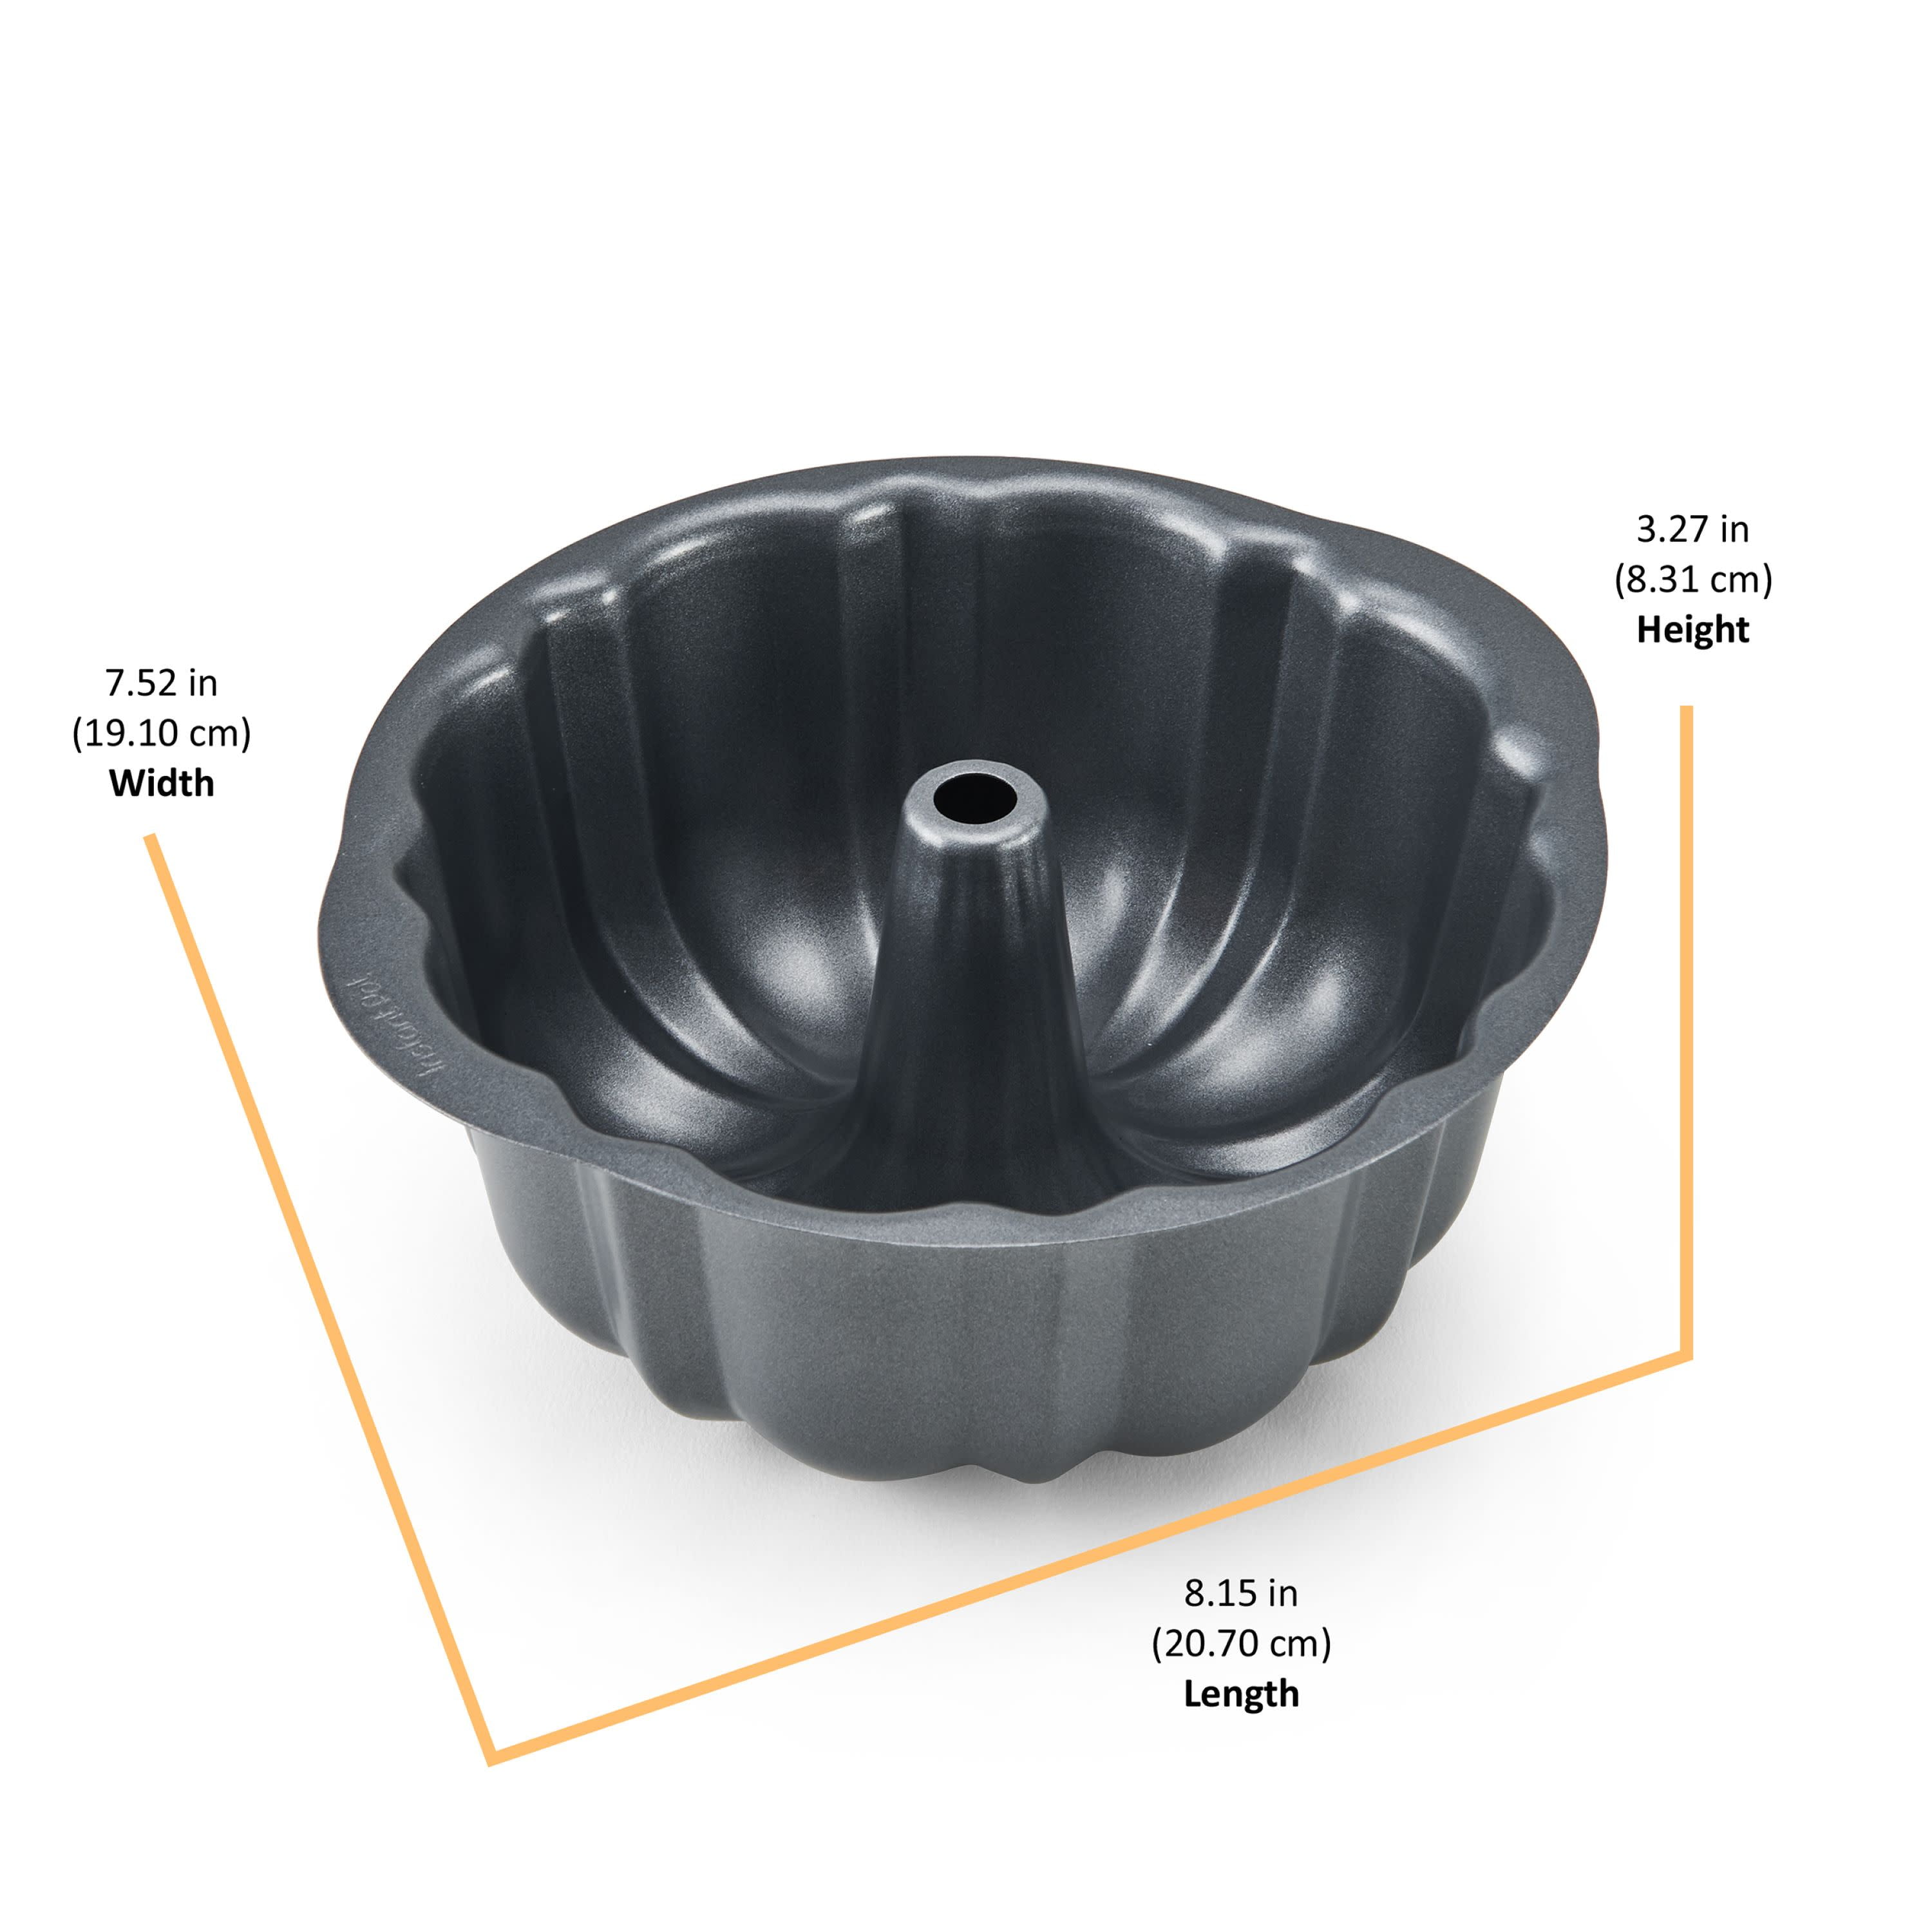 Insta-Flower Pan - Cast Aluminum Bundtlette Pan (Fits 3 Qt. - 8 Qt.  Devices) 